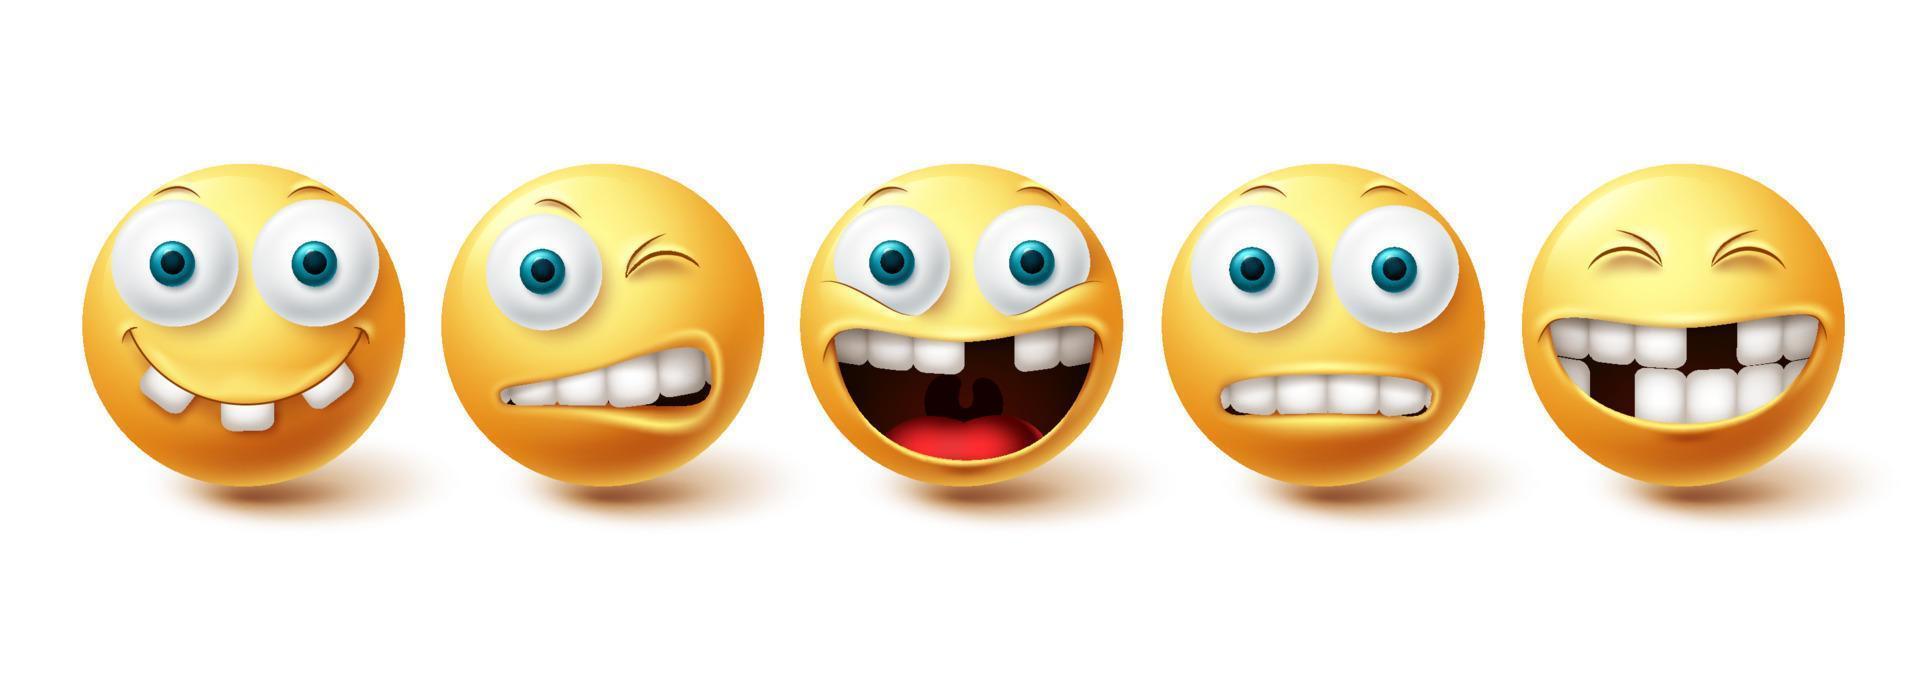 emoji grappige tanden vector set. emoticon grappige tanden en gekke collectie gezichtsuitdrukkingen geïsoleerd op een witte achtergrond. vector illustratie